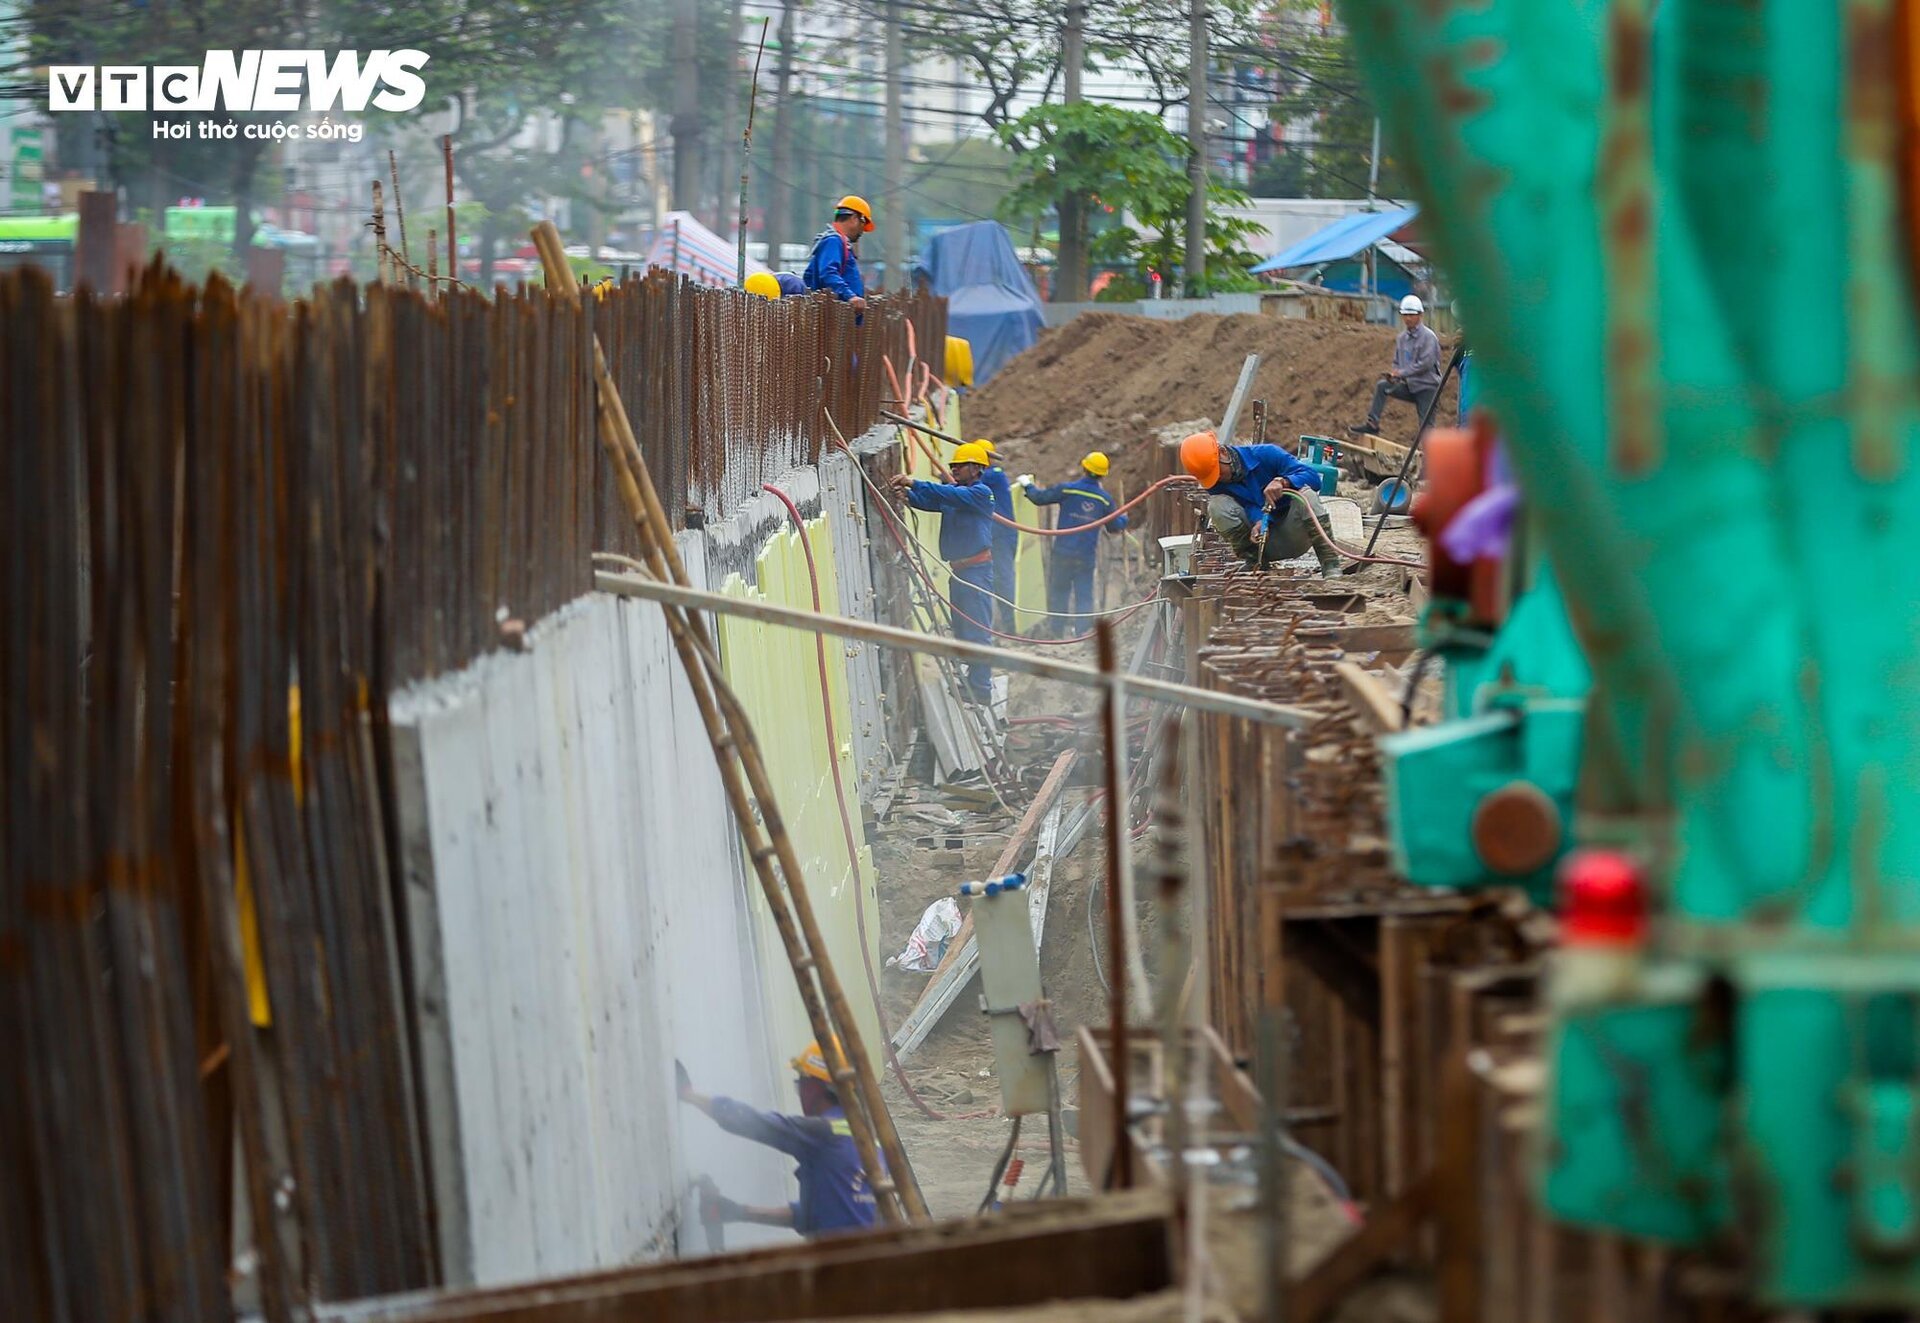 Cận cảnh hầm chui 778 tỷ đồng ở Hà Nội sau hơn 1 năm thi công - Ảnh 7.